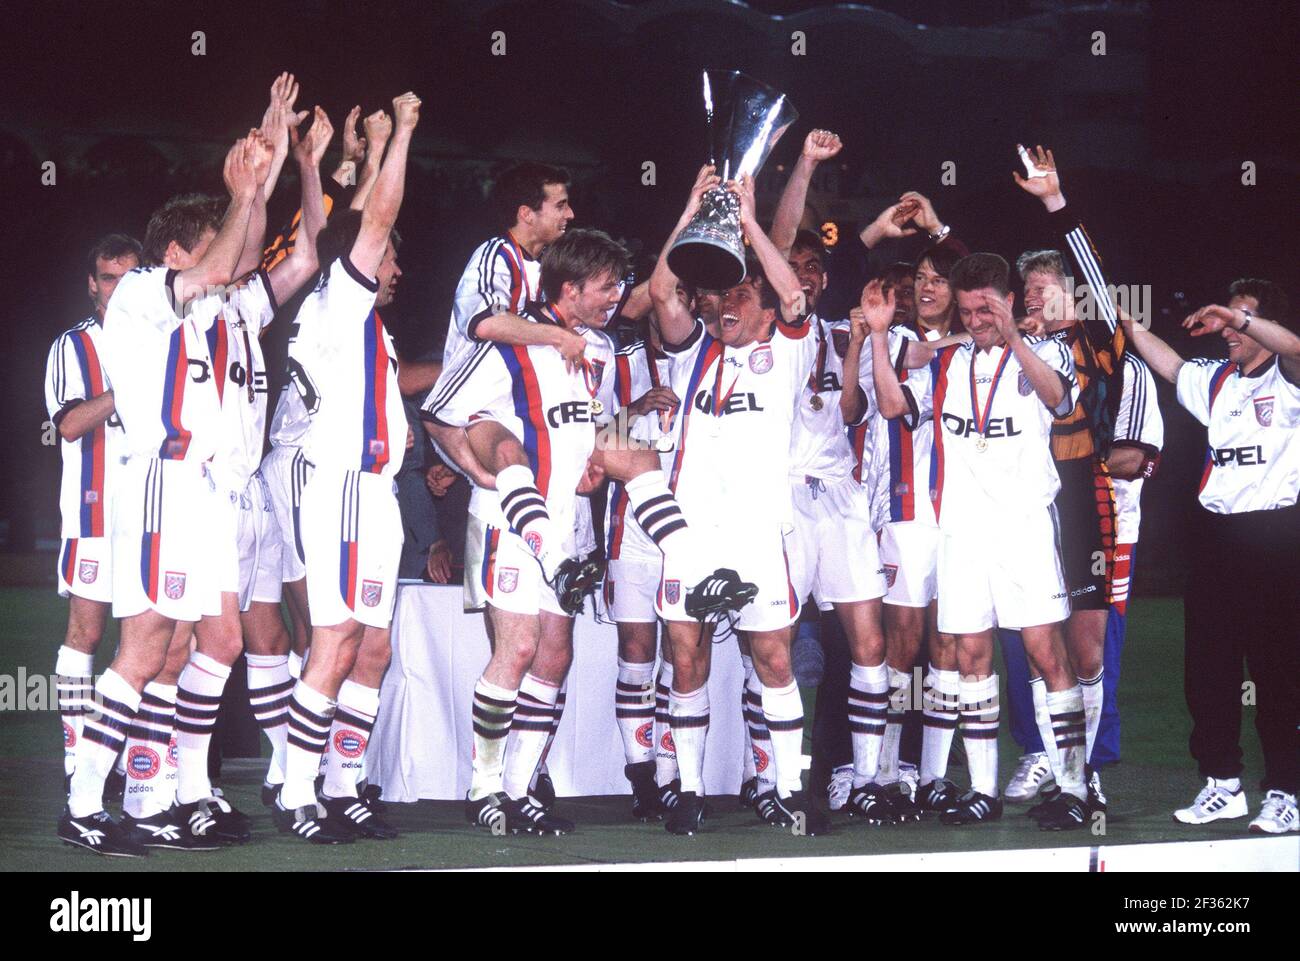 Lothar Matthaeus fêtera son 60e anniversaire le 21 mars 2021. Archive photo: FC Bayern Munich en tant que vainqueur de la coupe UEFA, célébration de la victoire à Bordeaux, photo d'équipe, Lothar MATTHEAEUS tient la coupe dans les airs, jubilation, 15 mai 1996. Â | utilisation dans le monde entier Banque D'Images